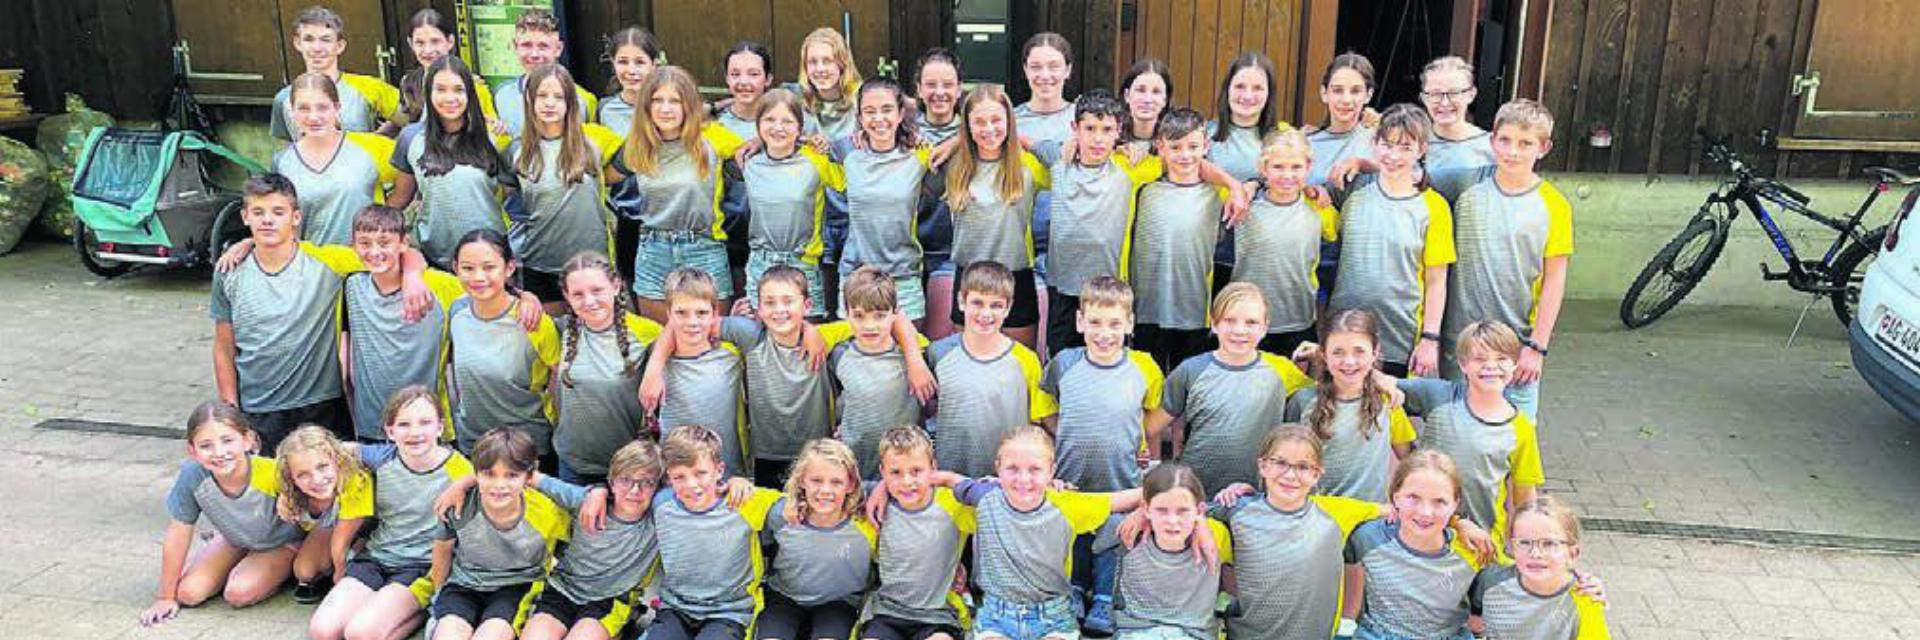 Gruppenbild der 49 Kinder und Jugendlichen und des Leiterteams – die Jugend des TV Merenschwand in Langenthal. Bild: zg